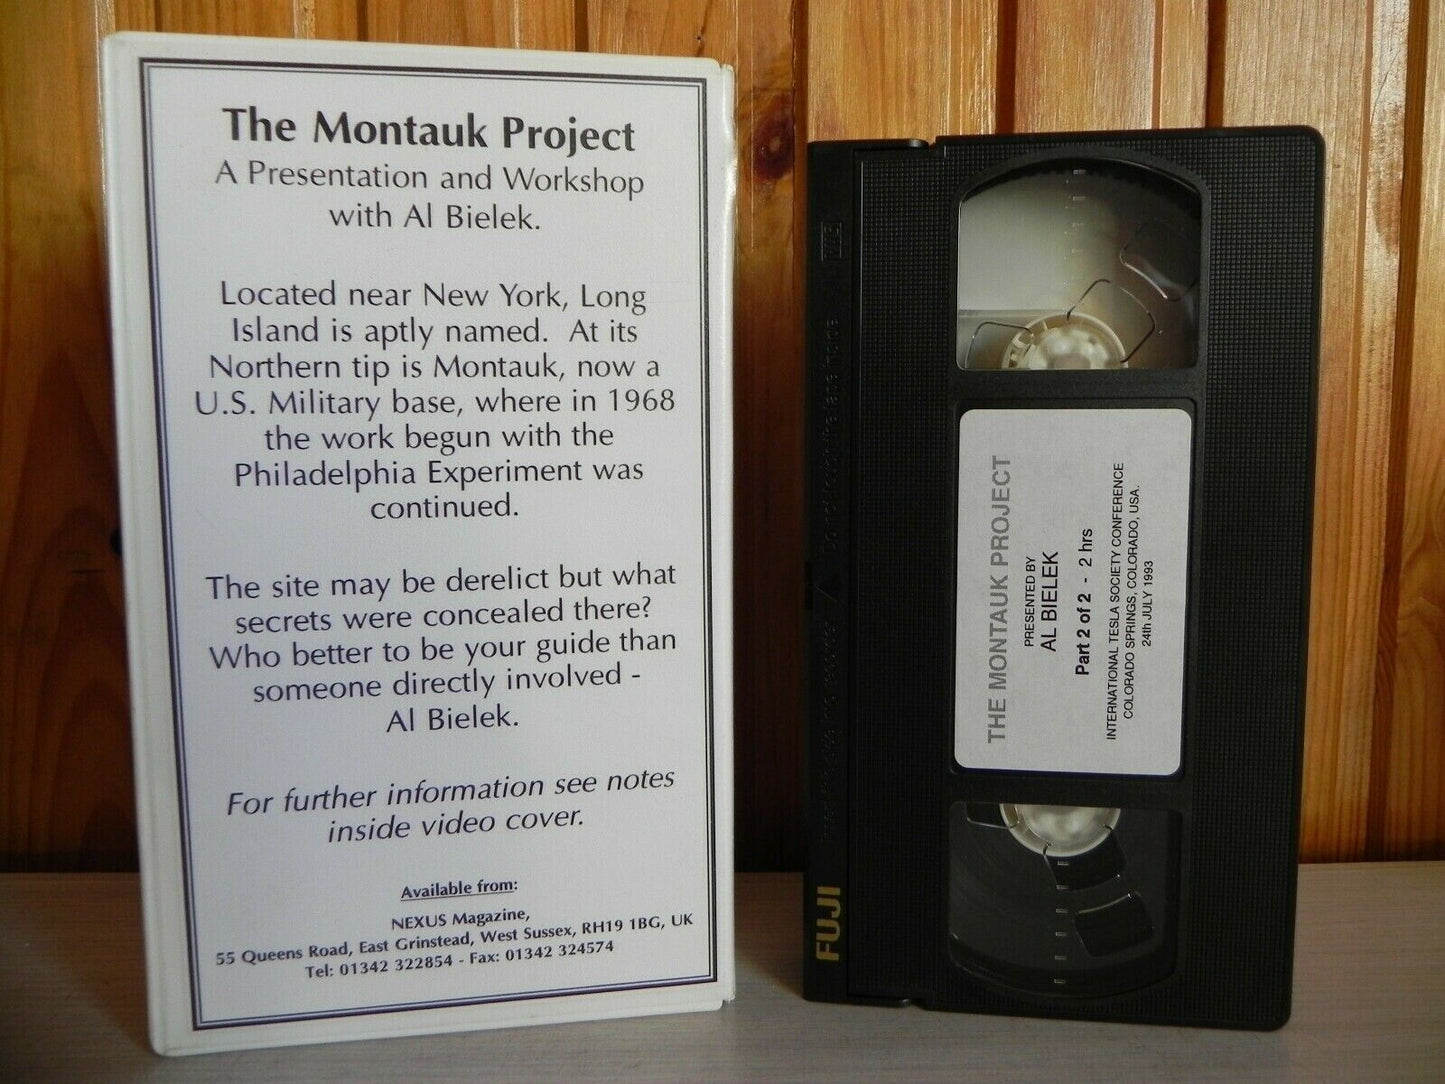 The Montauk Project - Part 2 - Al Bielek - UFO Exp West, Los Angeles, CA. - VHS-